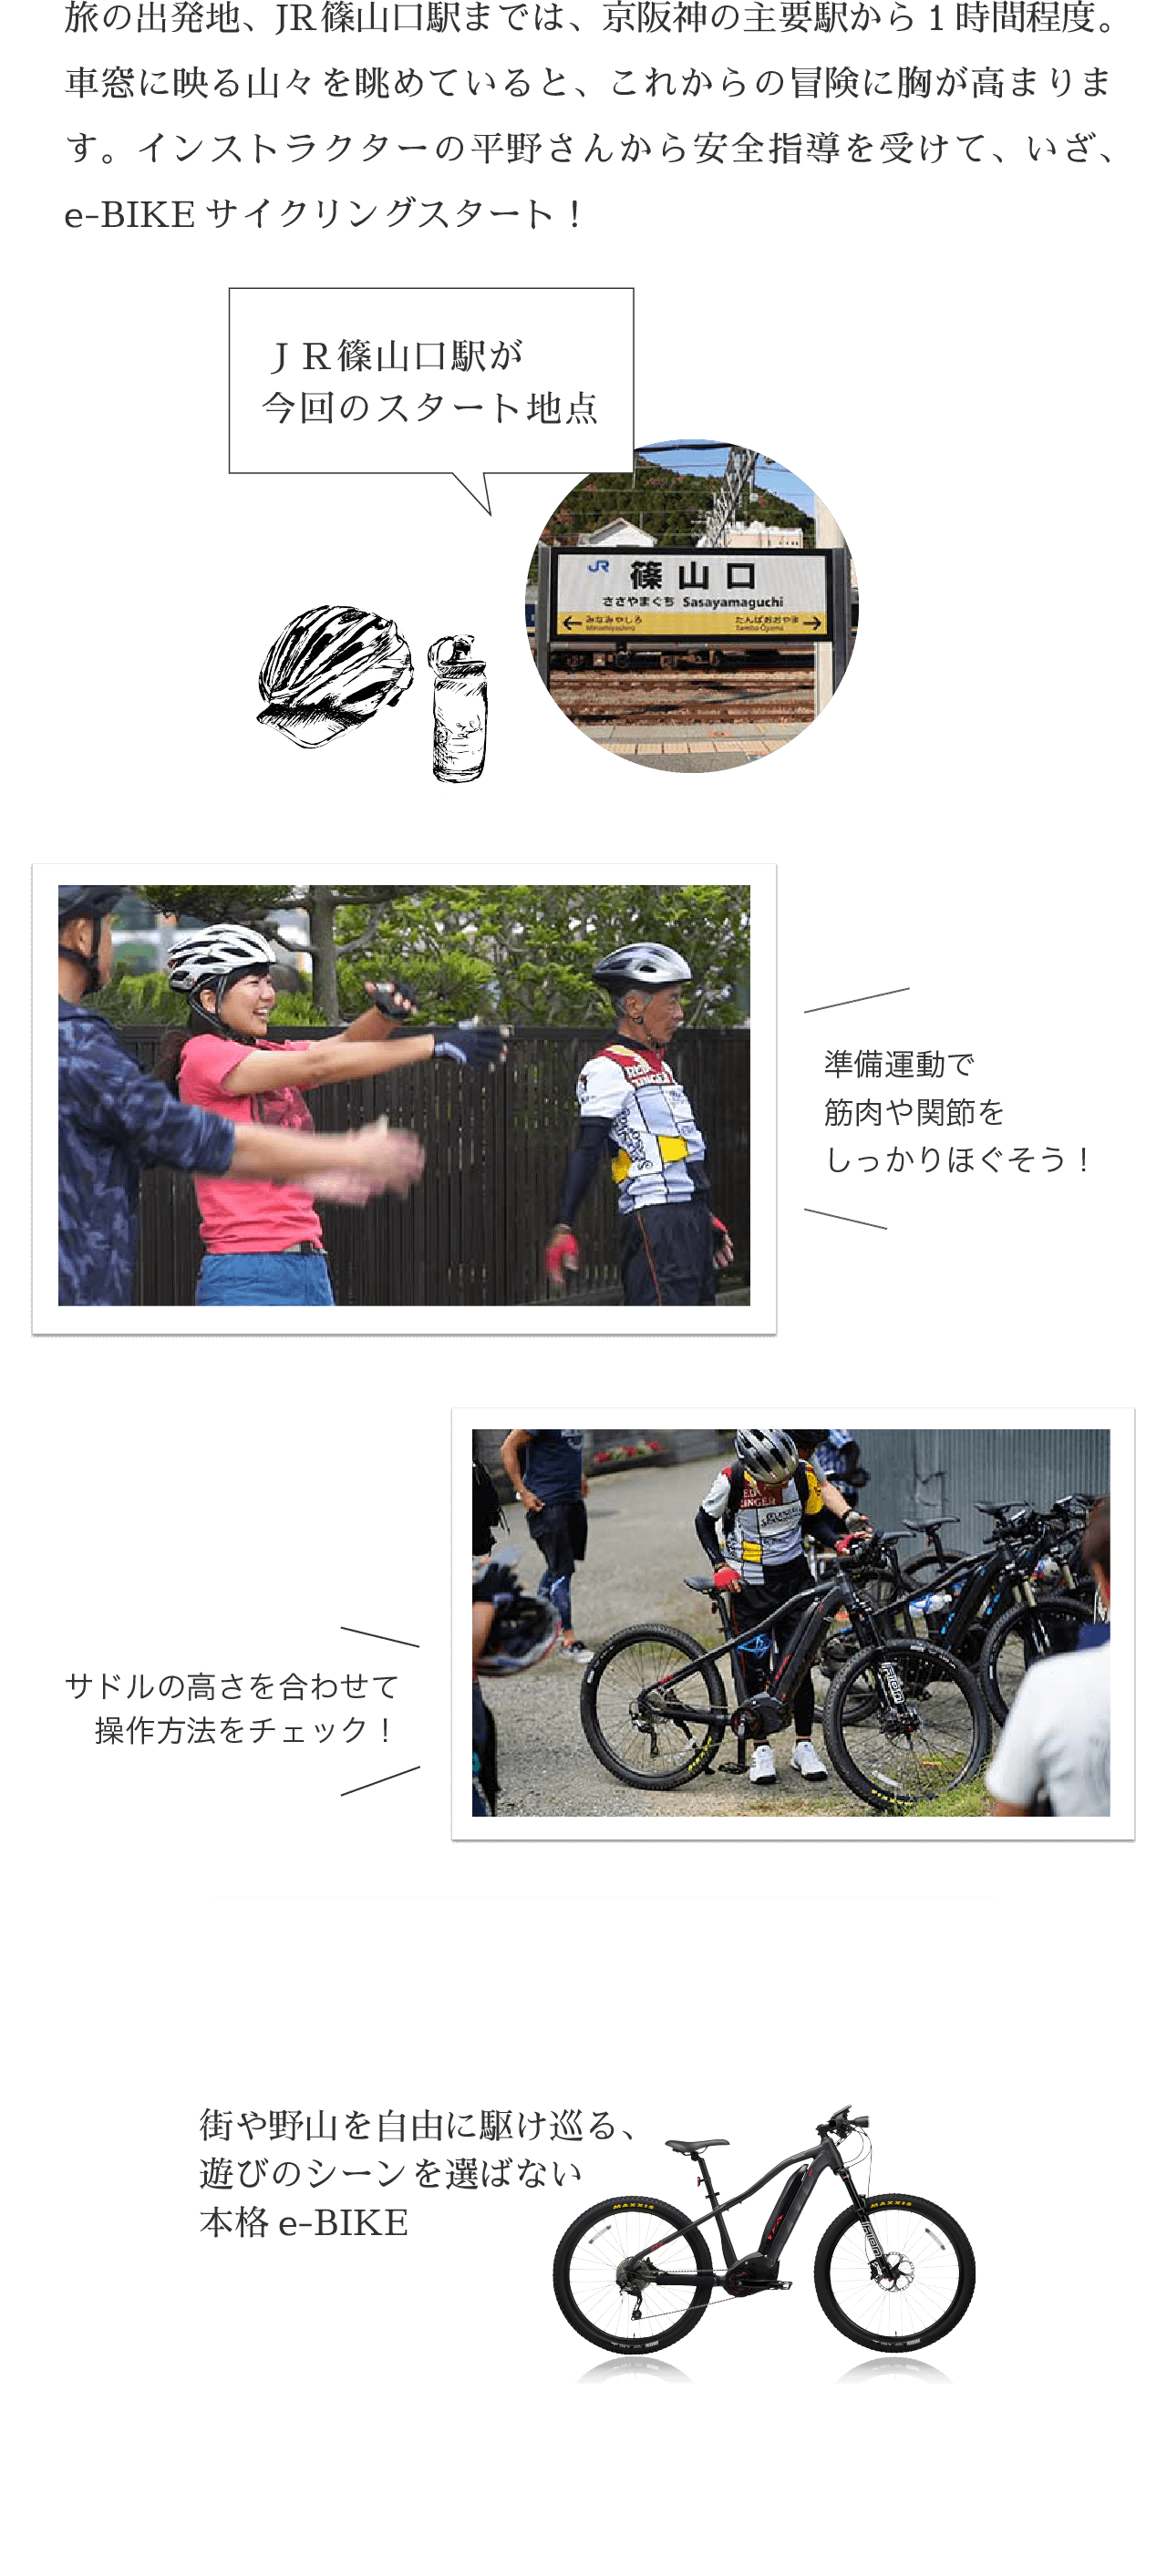 旅の出発地、JR篠山口駅までは、京阪神の主要駅から1時間程度。車窓に映る山々を眺めていると、これからの冒険に胸が高まります。インストラクターの平野さんから安全指導を受けて、いざ、e-BIKEサイクリングスタート！ 街や野山を自由に駆け巡る、遊びのシーンを選ばない本格e-BIKE